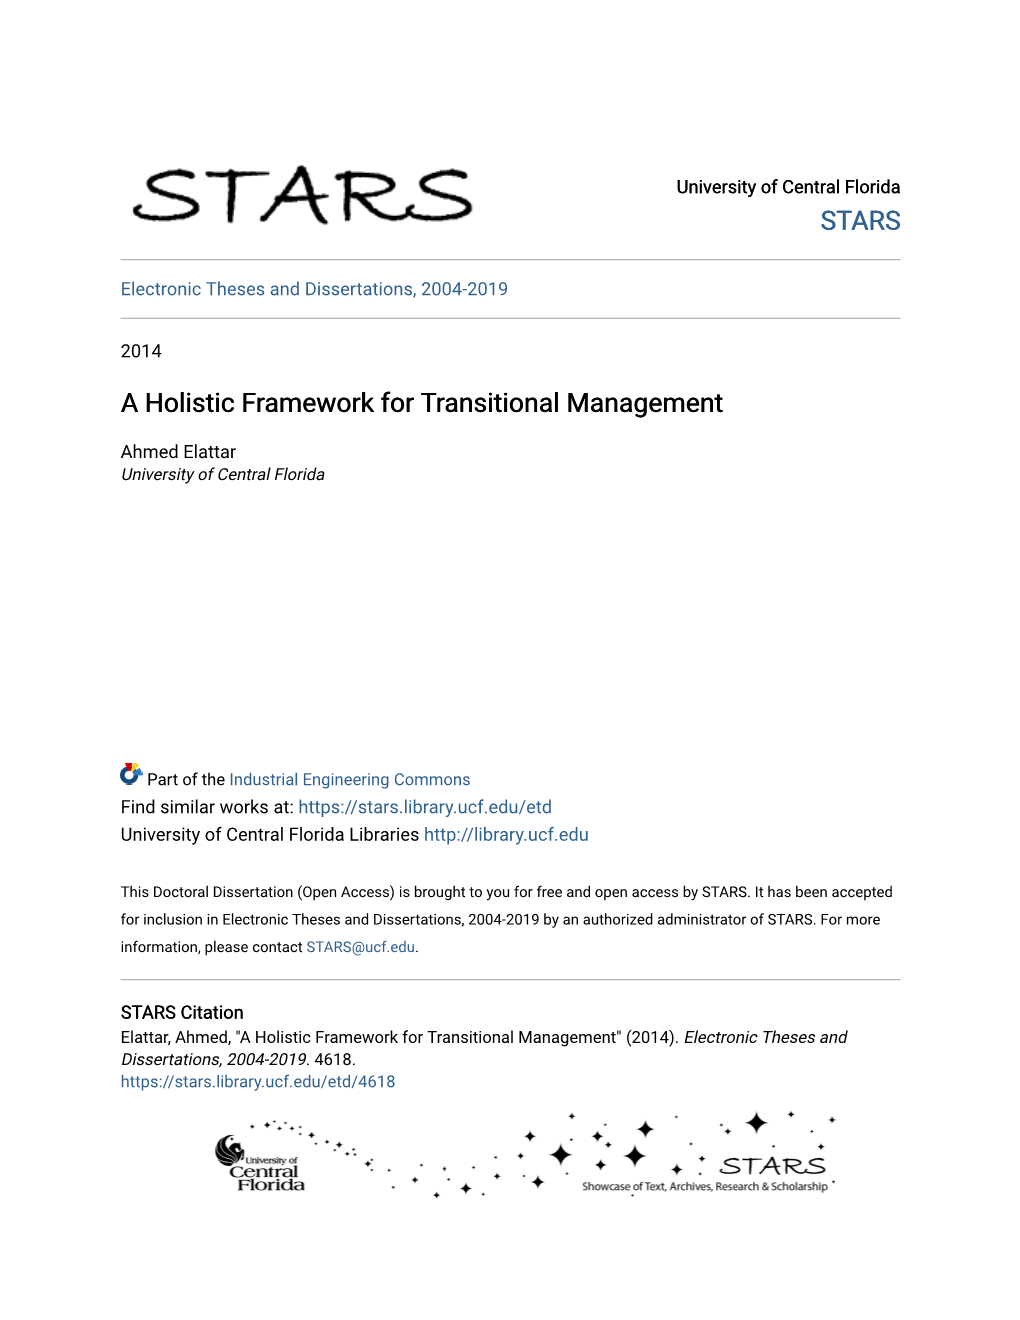 A Holistic Framework for Transitional Management